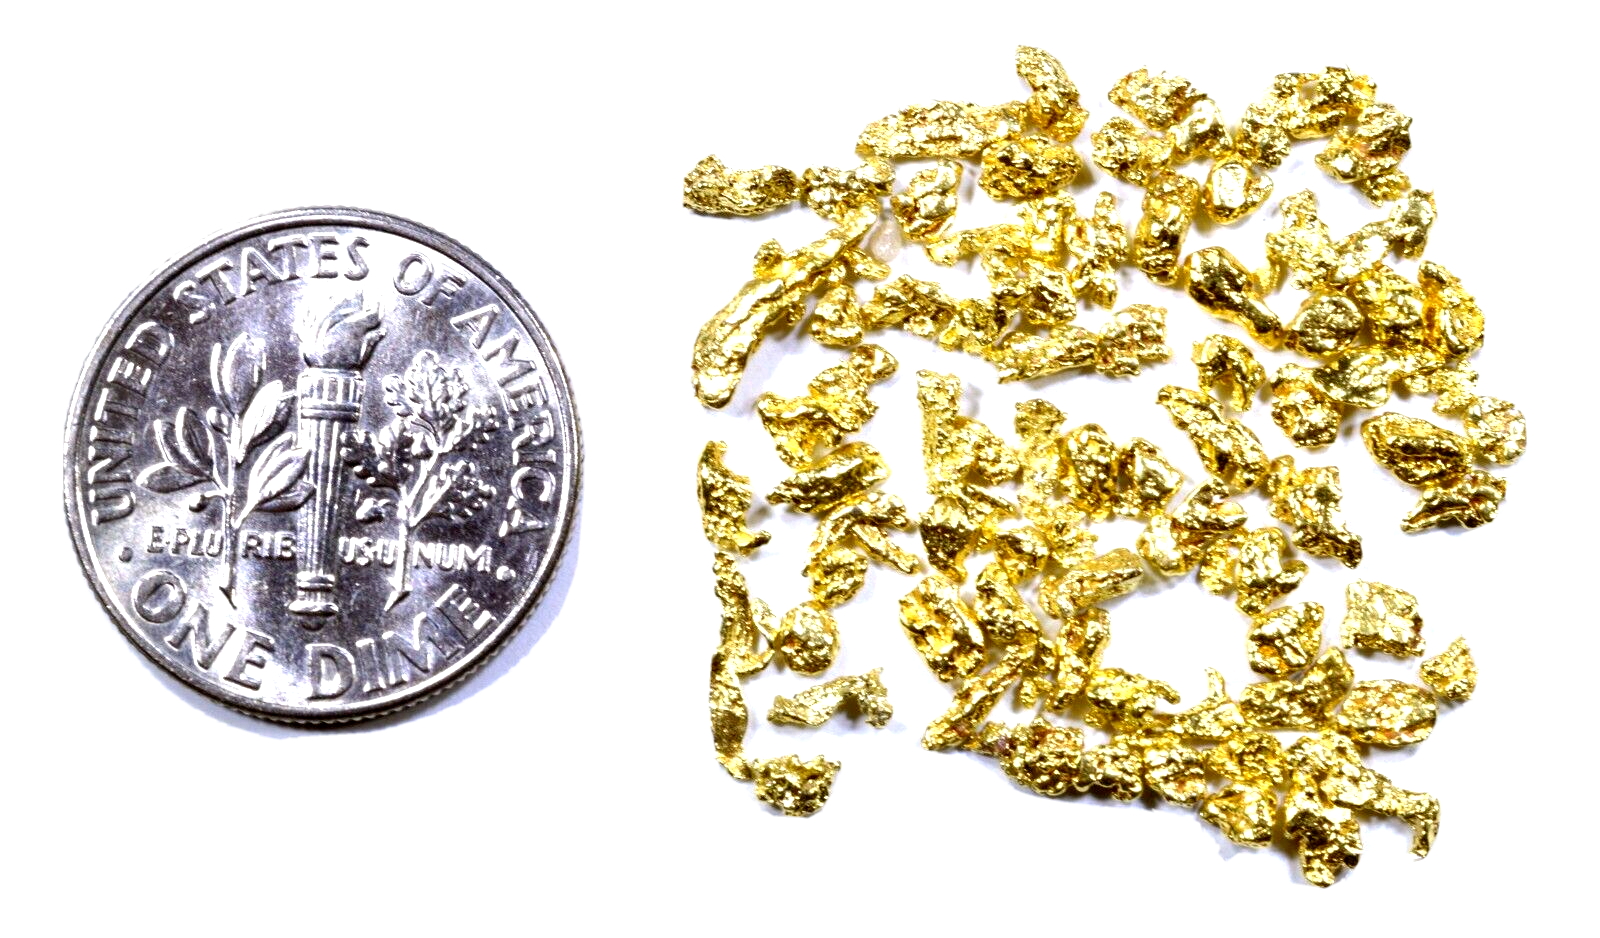 1.550 GRAMS ALASKAN YUKON BC NATURAL PURE GOLD NUGGETS #12 MESH